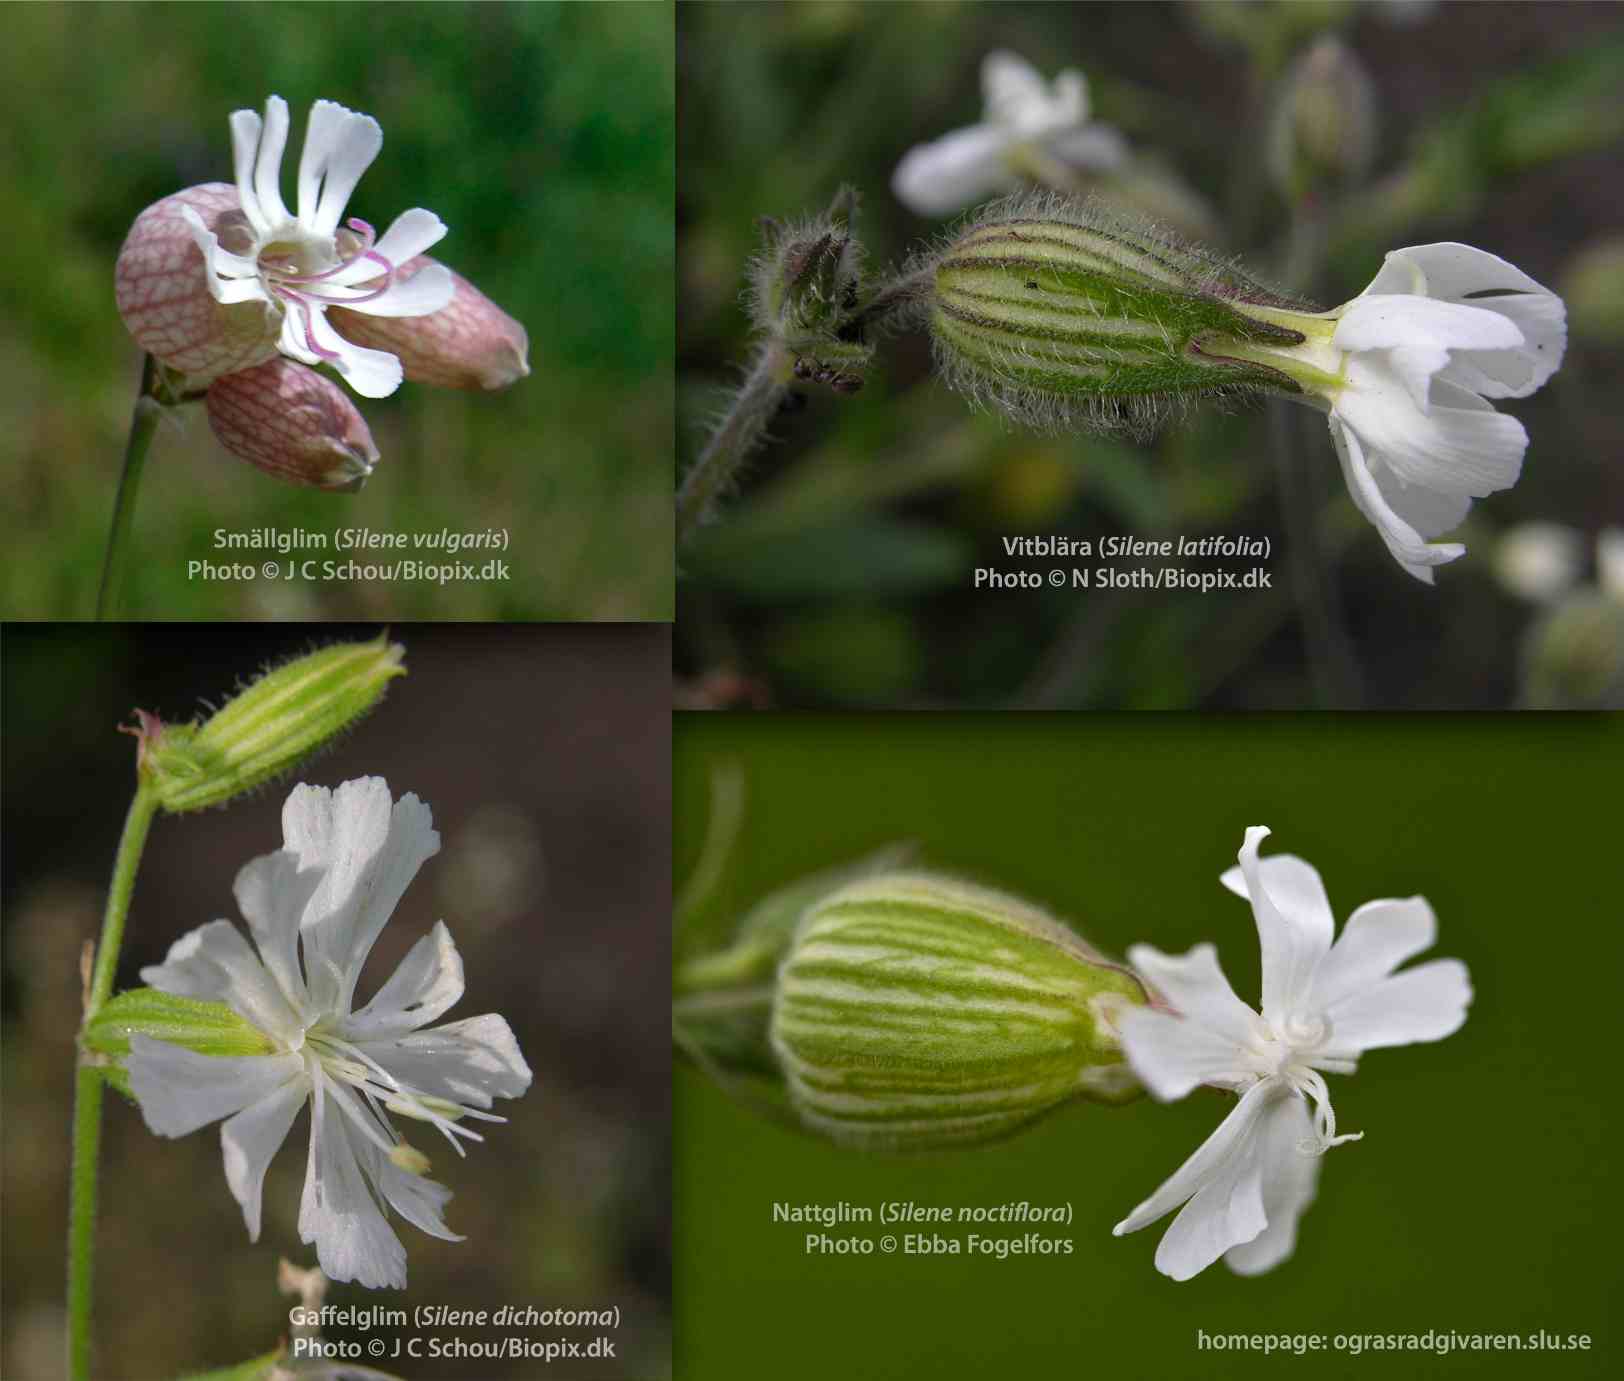 Jämförelse av foder och blommor: smällglim (S. vulgaris), vitblära (S. latifolia), gaffelglim (S. dichotoma), nattglim (S. noctiflora).